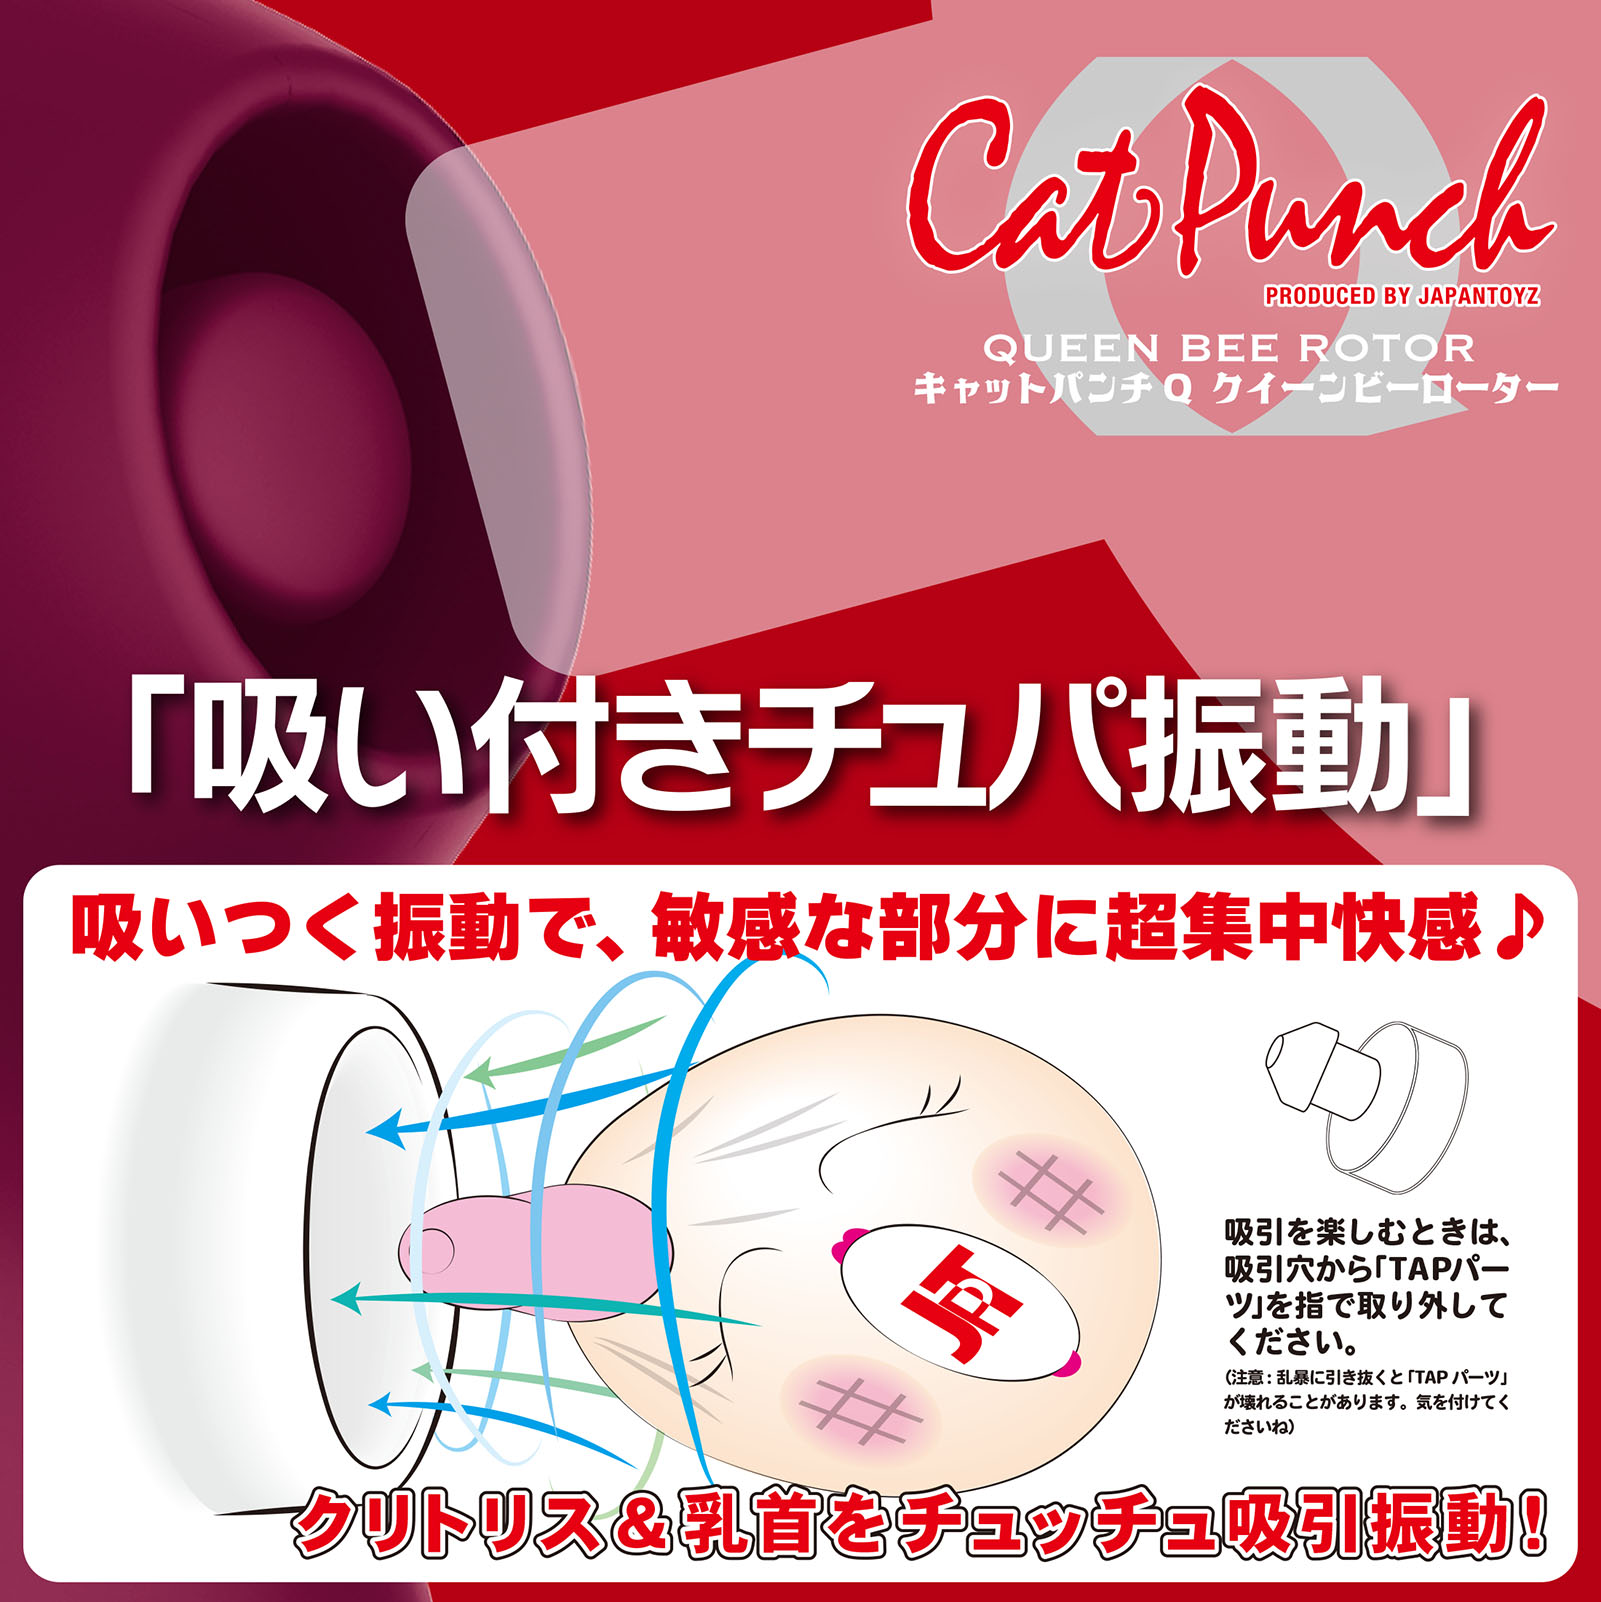 Cat Punch キャットパンチ Q クイーンビー ローター04